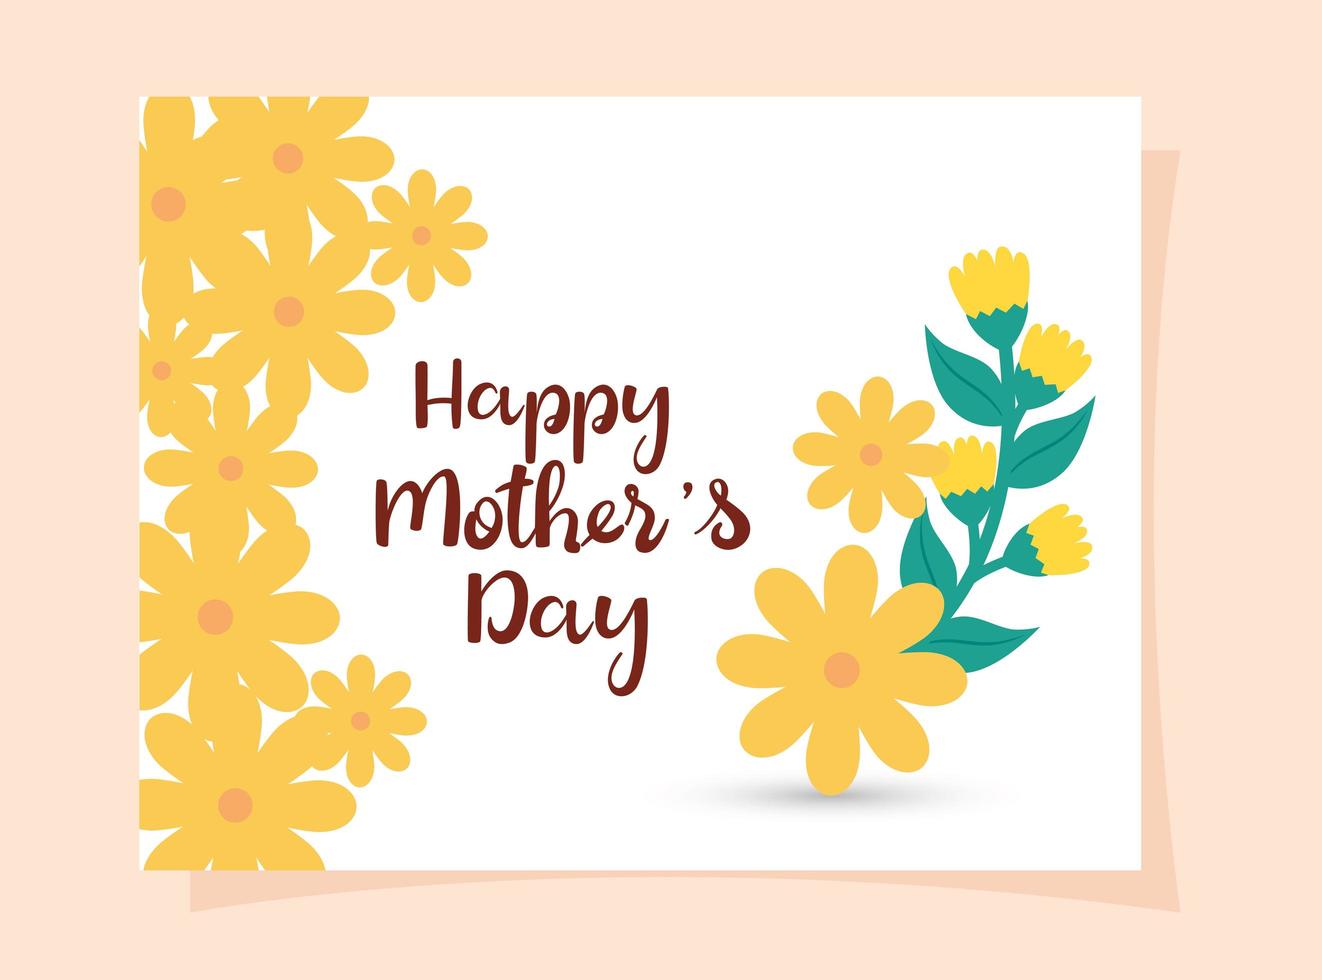 glückliche Muttertagskarte mit quadratischem Rahmen und Blumendekoration vektor